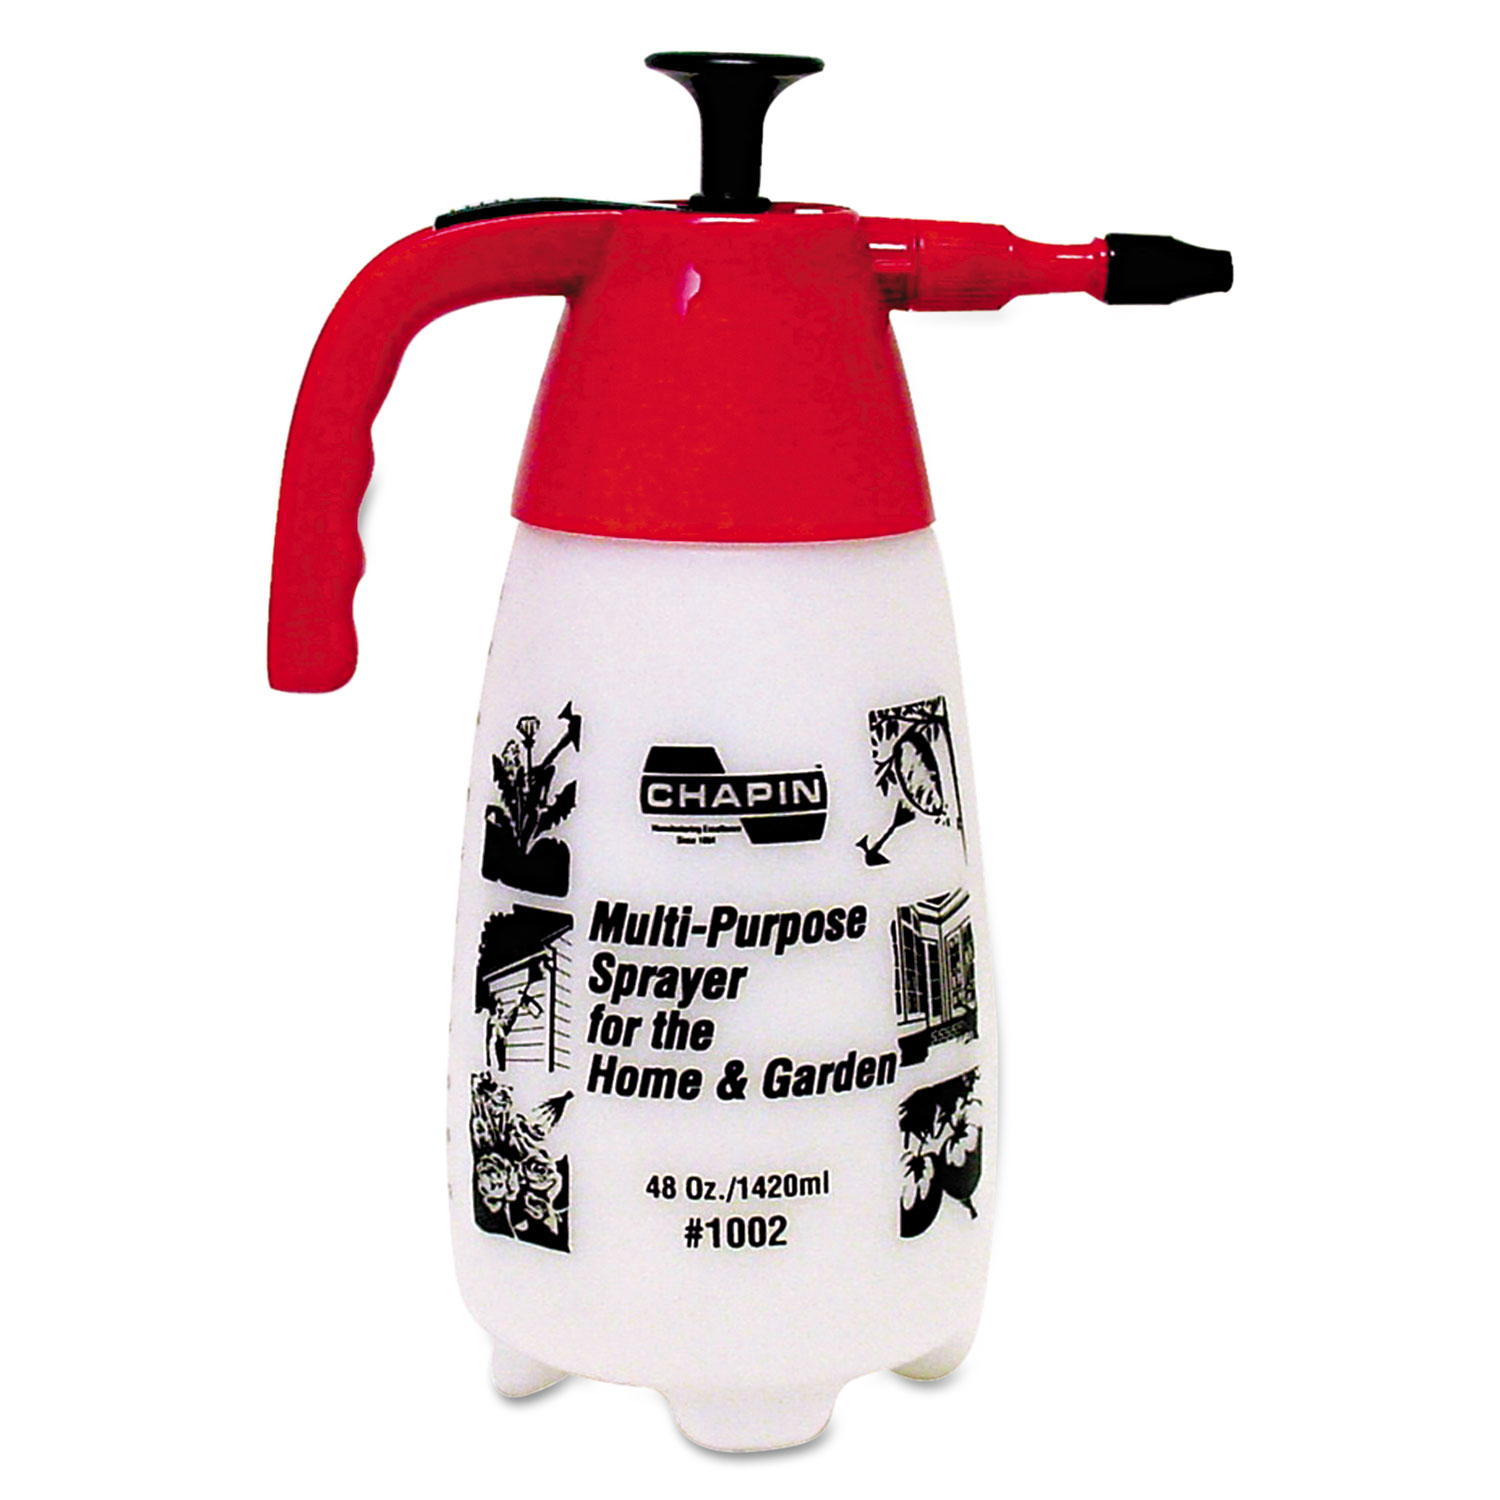 Chapin Multi-Purpose Sprayer 48oz.